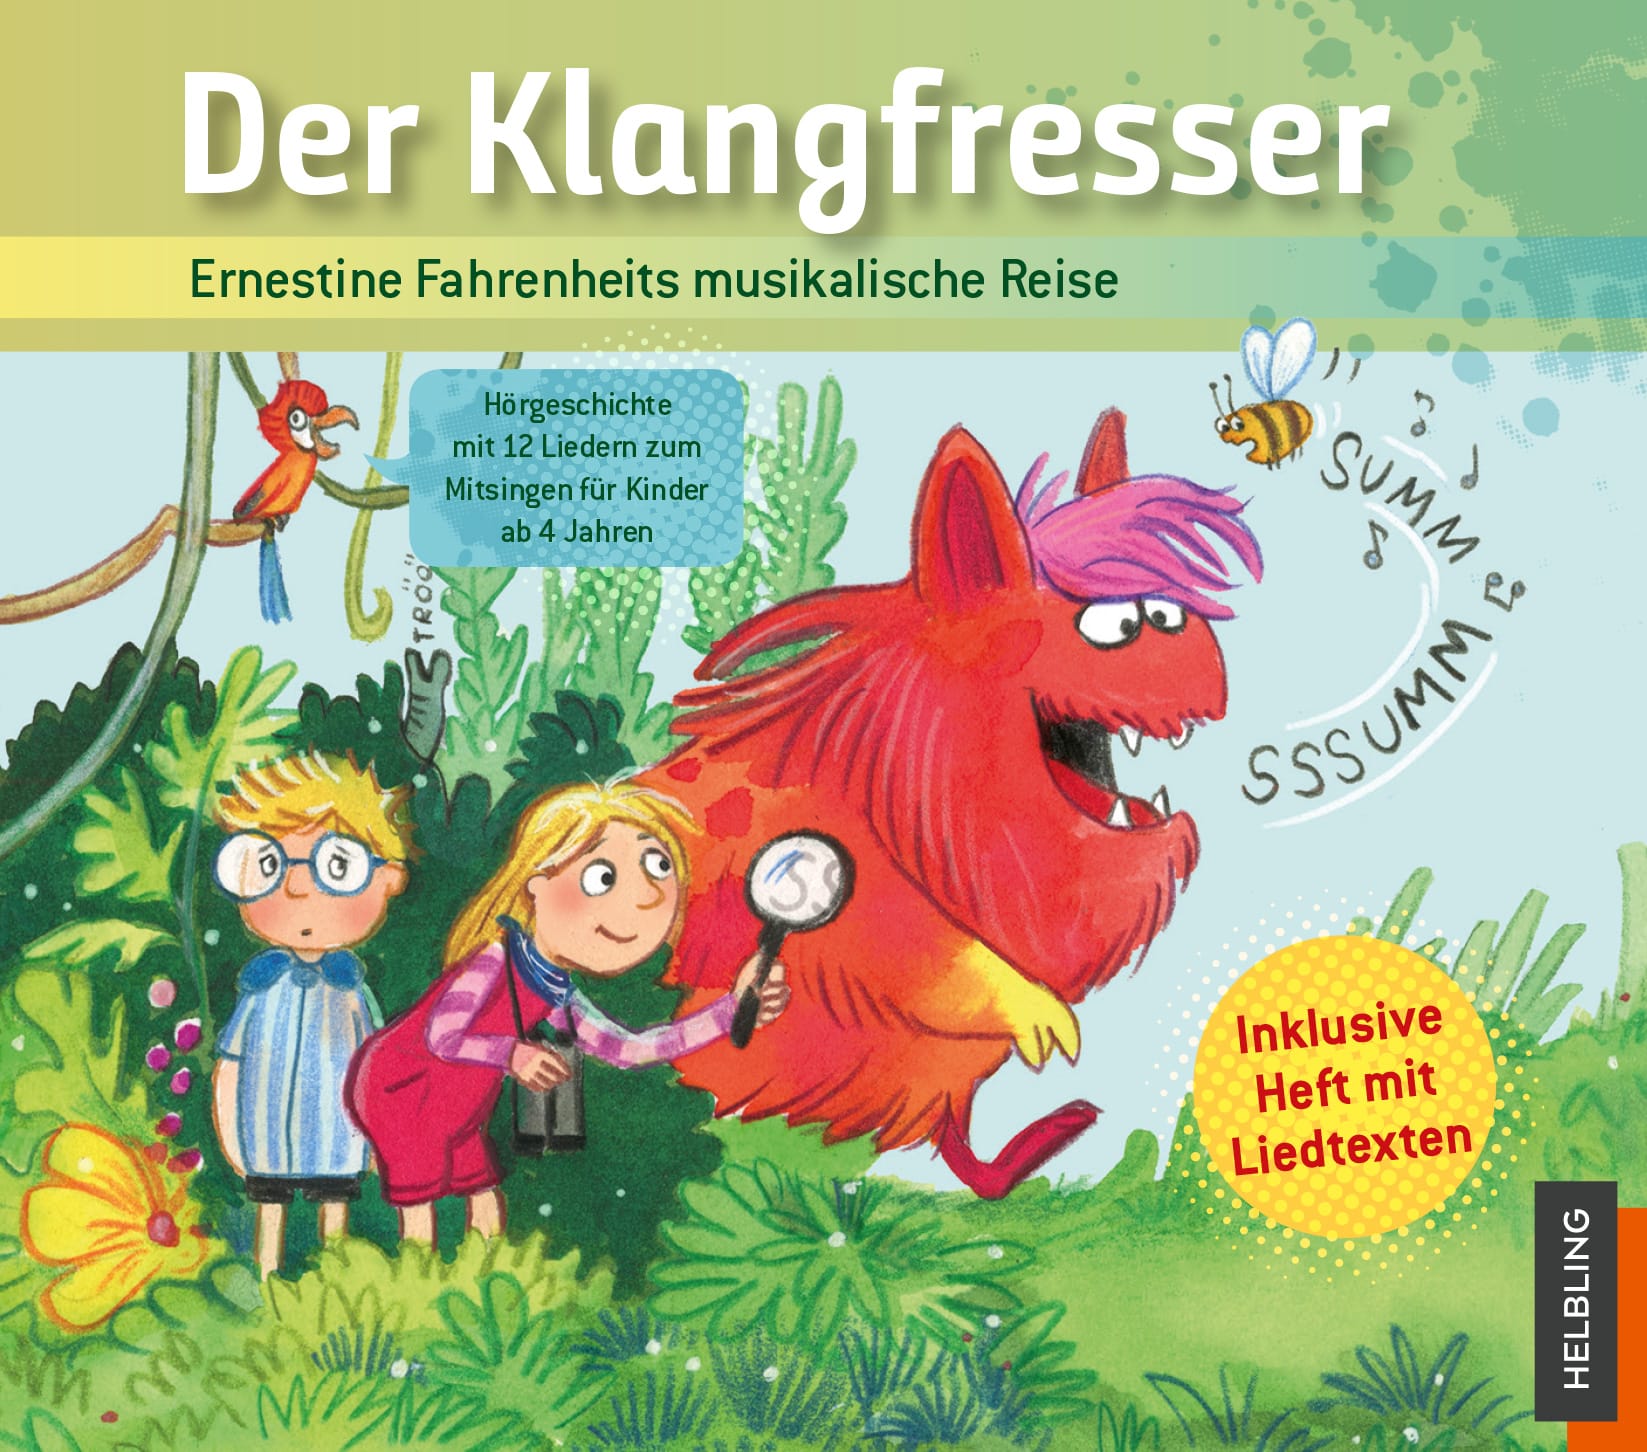 CD mit Ernestine Fahrenheits musikalische Reise in Der Klangfresser